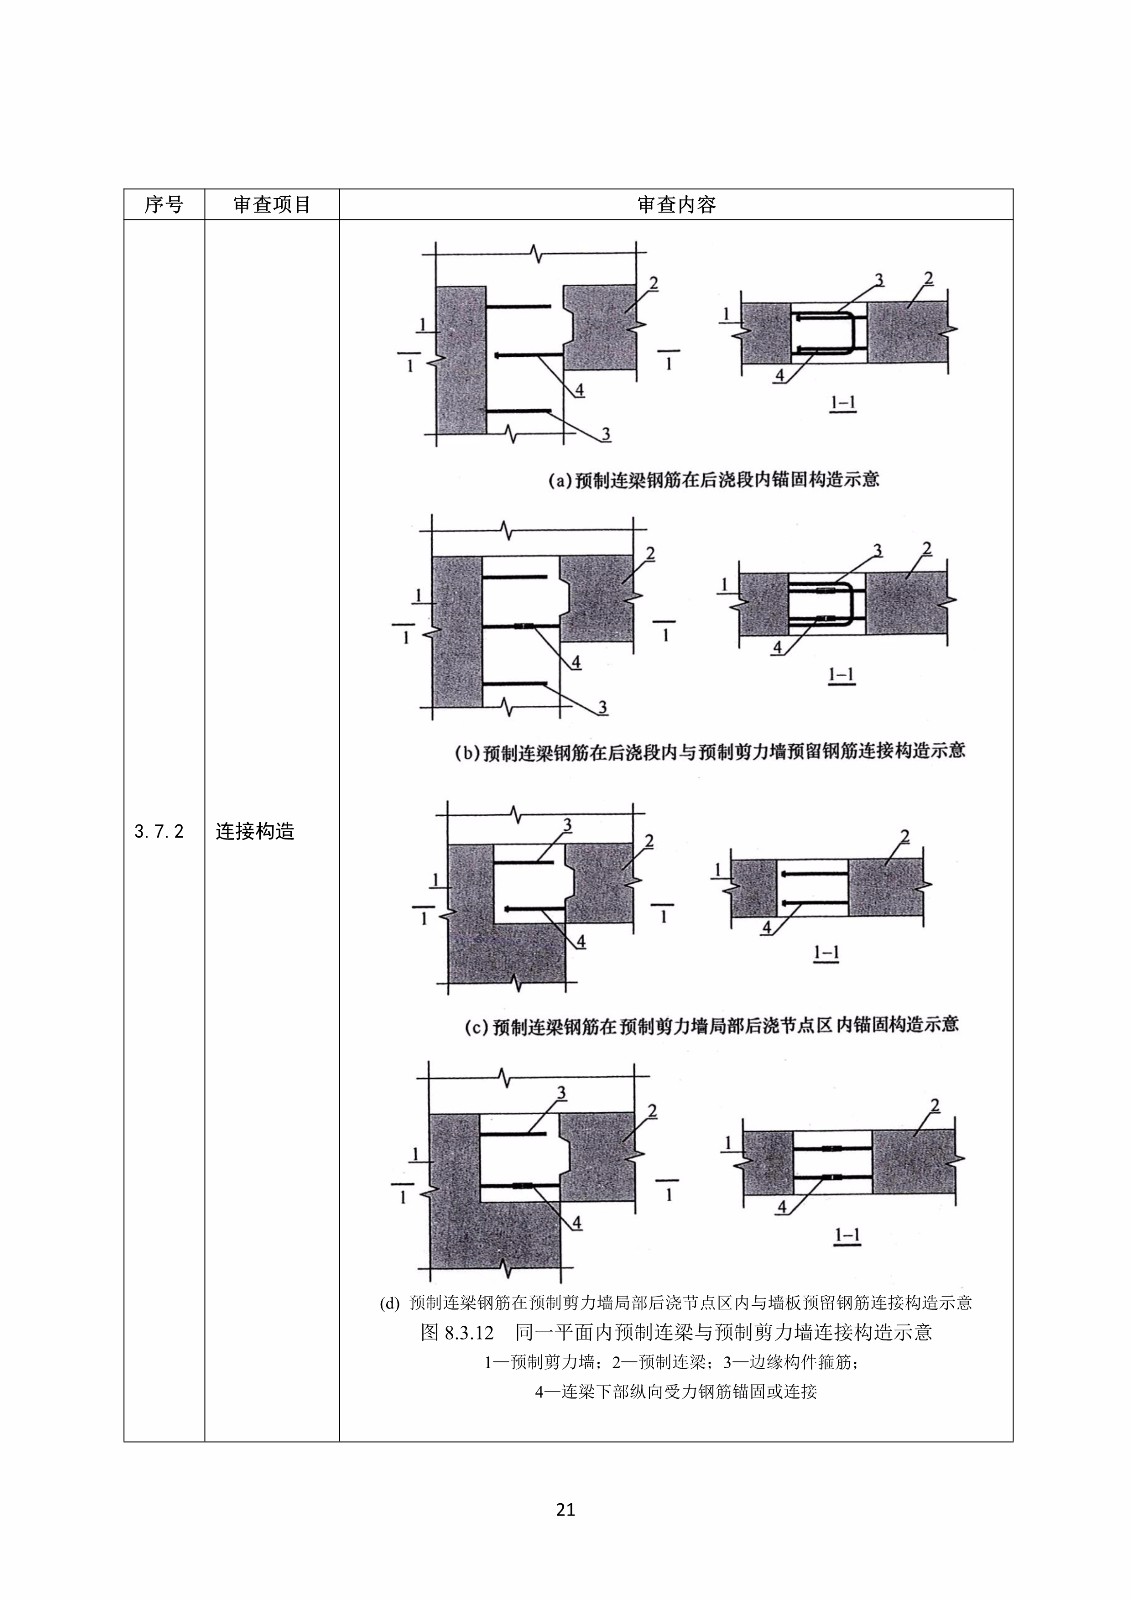 装配式混凝土结构建筑工程施工图设计文件技术审查要点_25.jpg